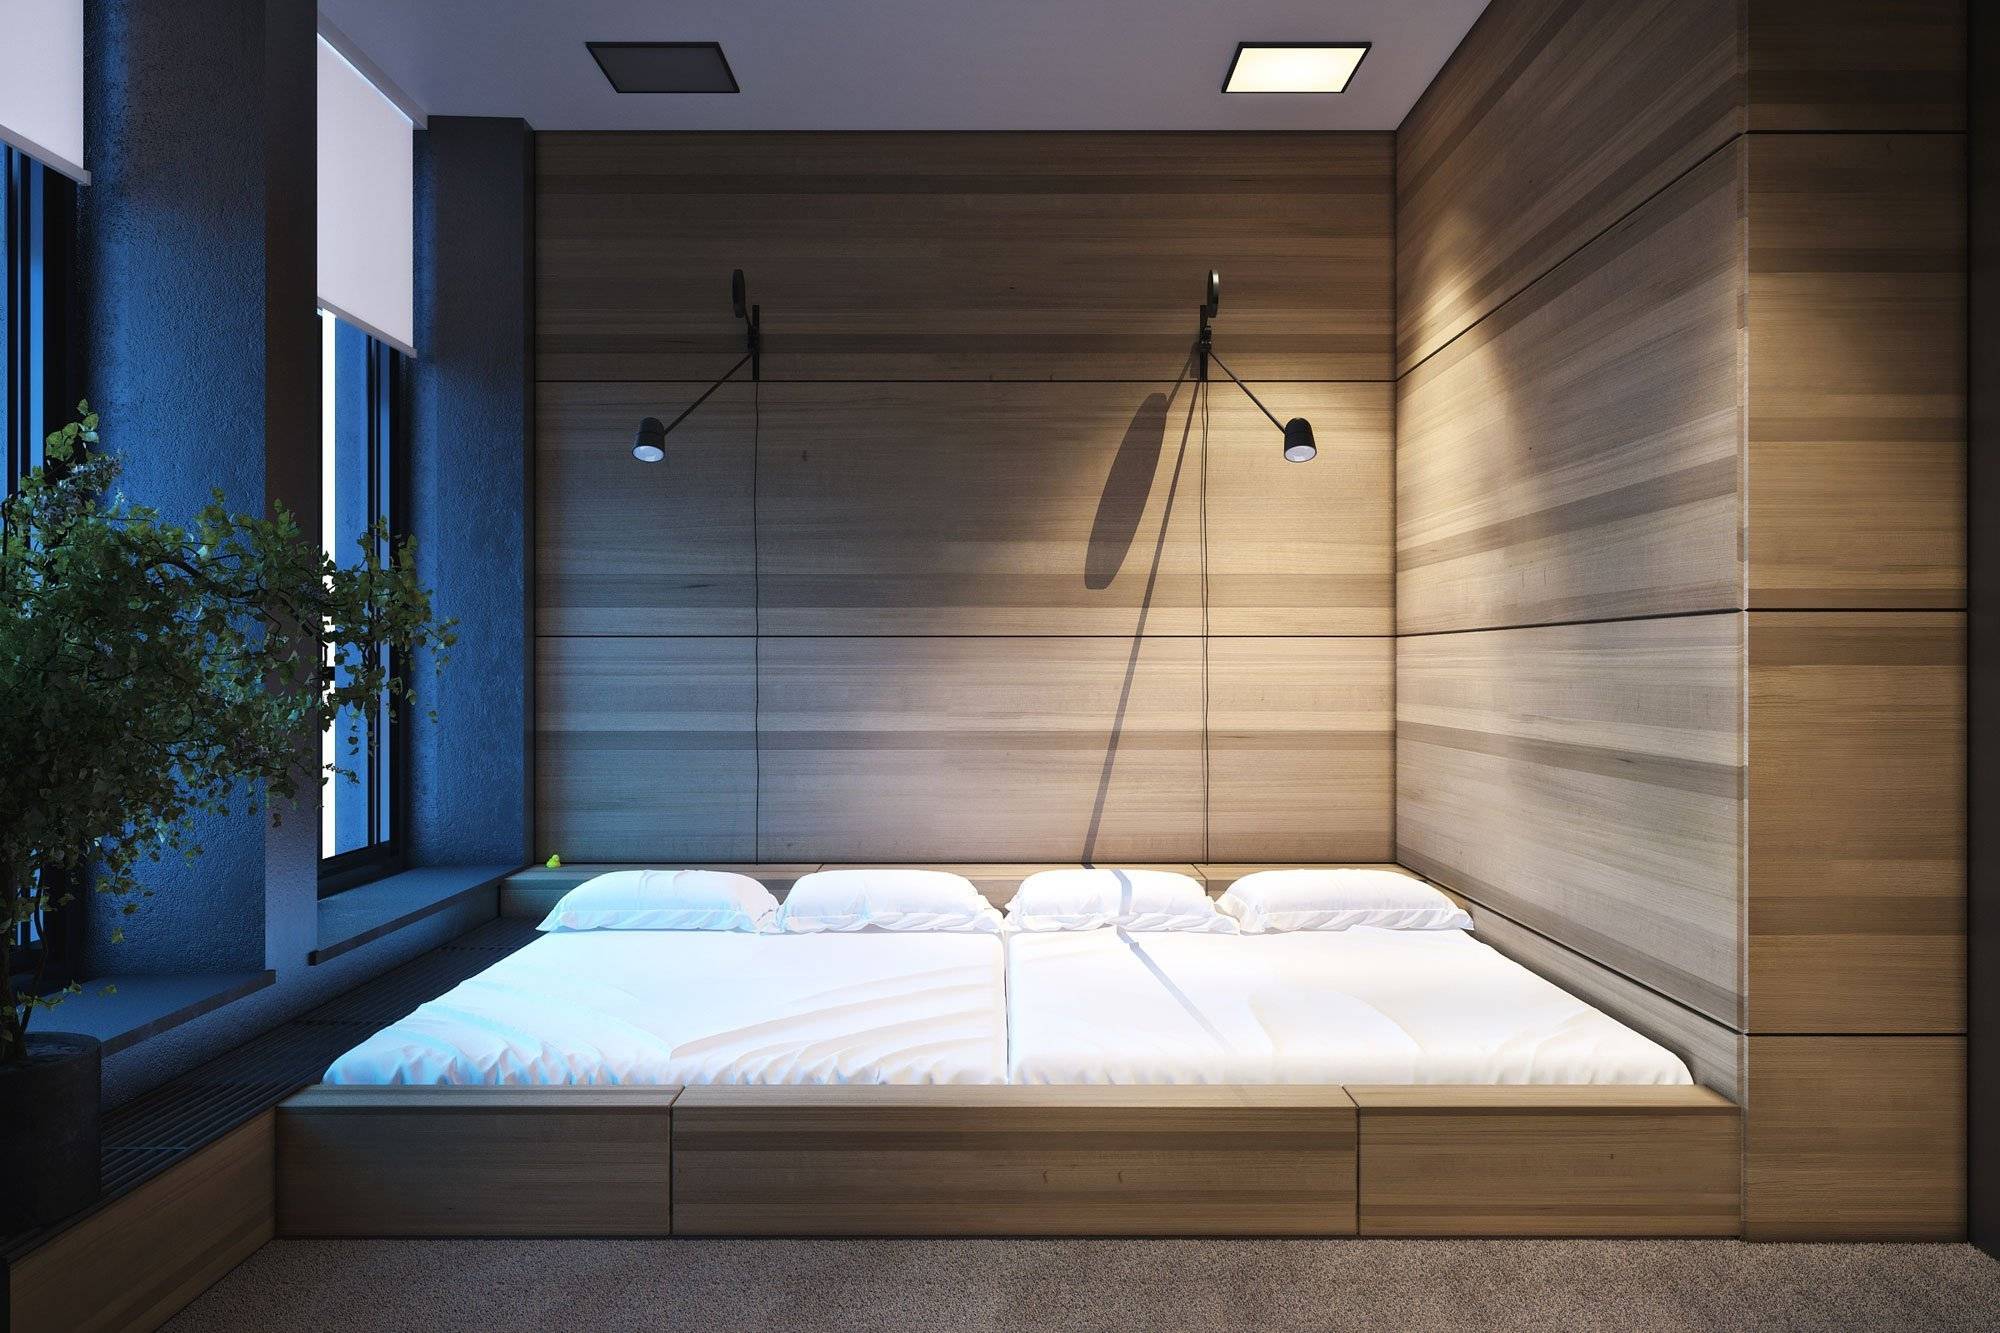 Кровать в японском стиле, какая должна быть форма и чем отличается